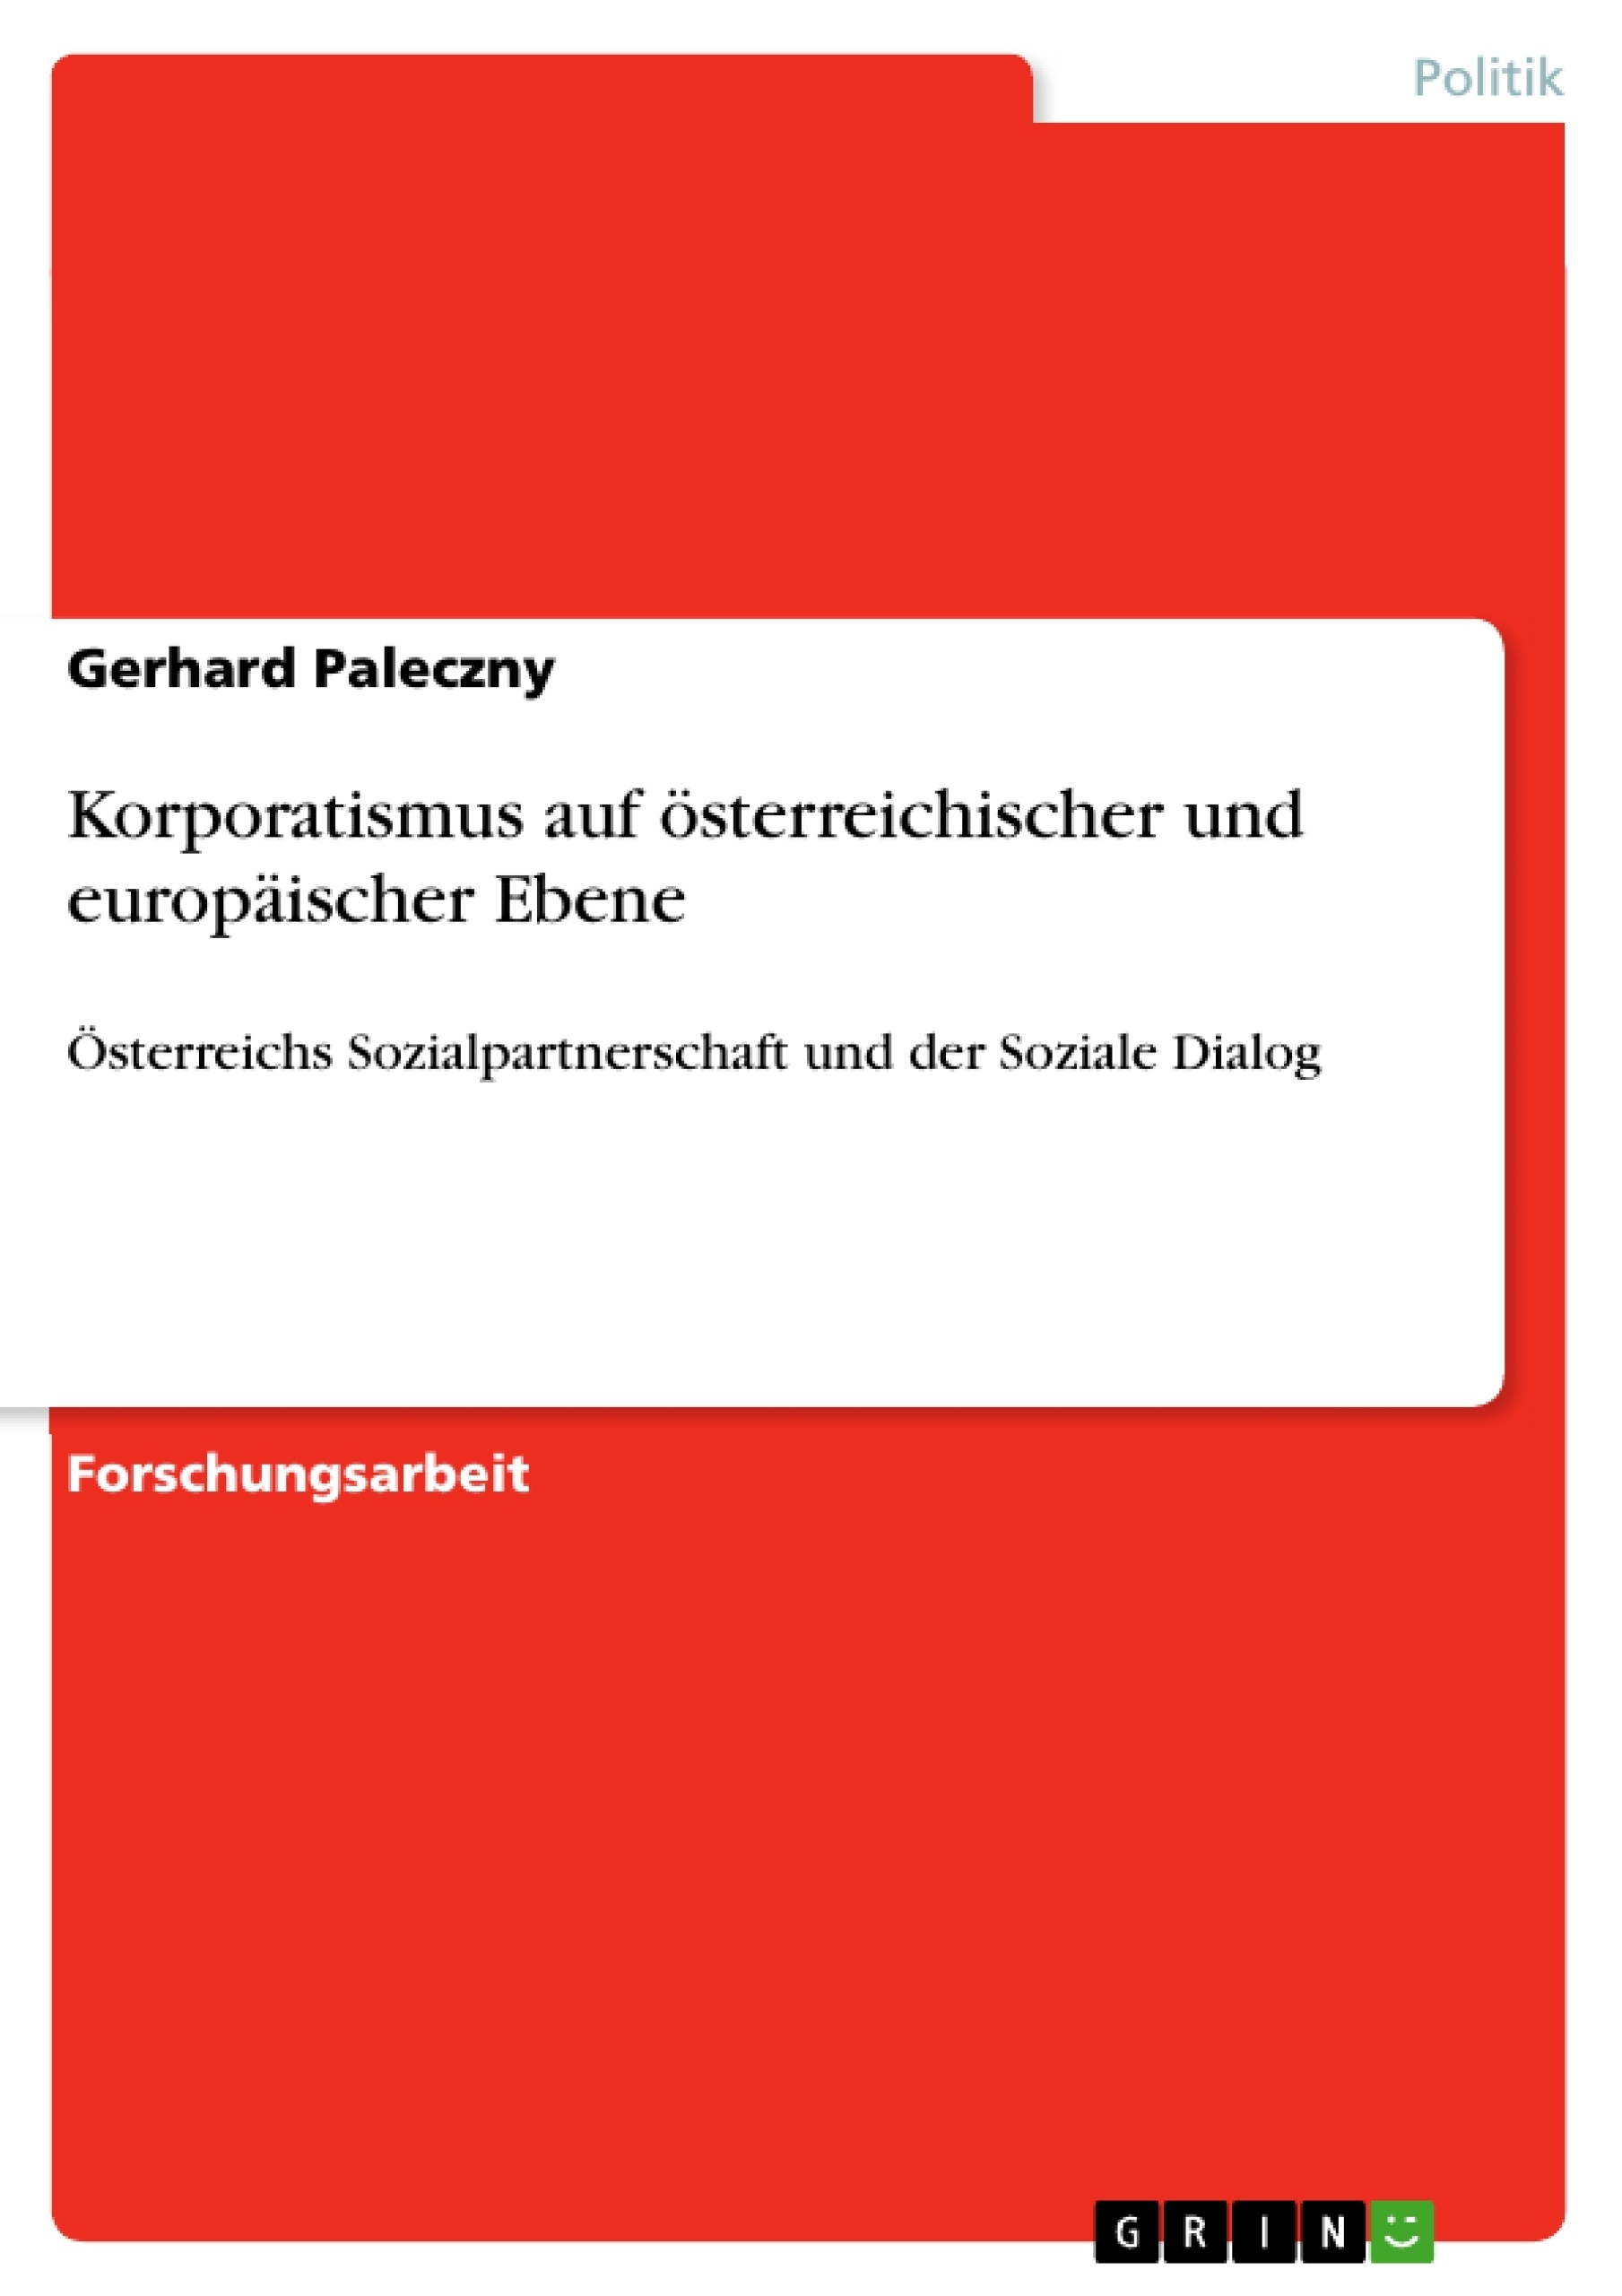 Título: Korporatismus auf österreichischer und europäischer Ebene